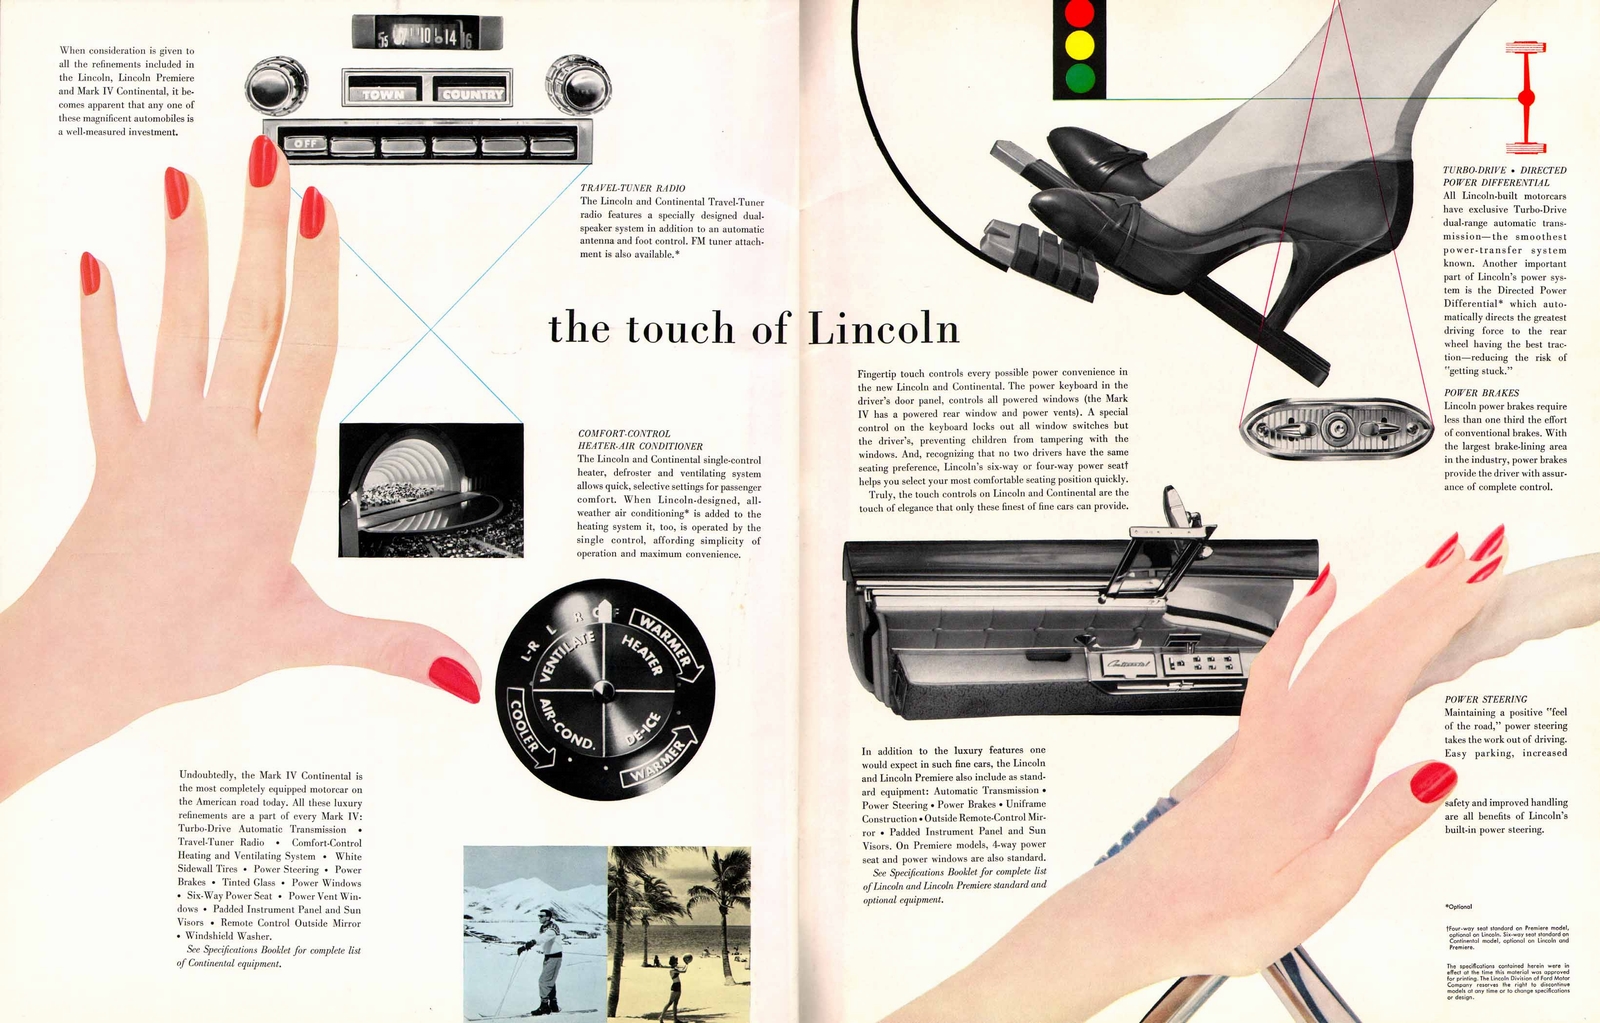 n_1959 Lincoln Full Line Prestige-22-23.jpg